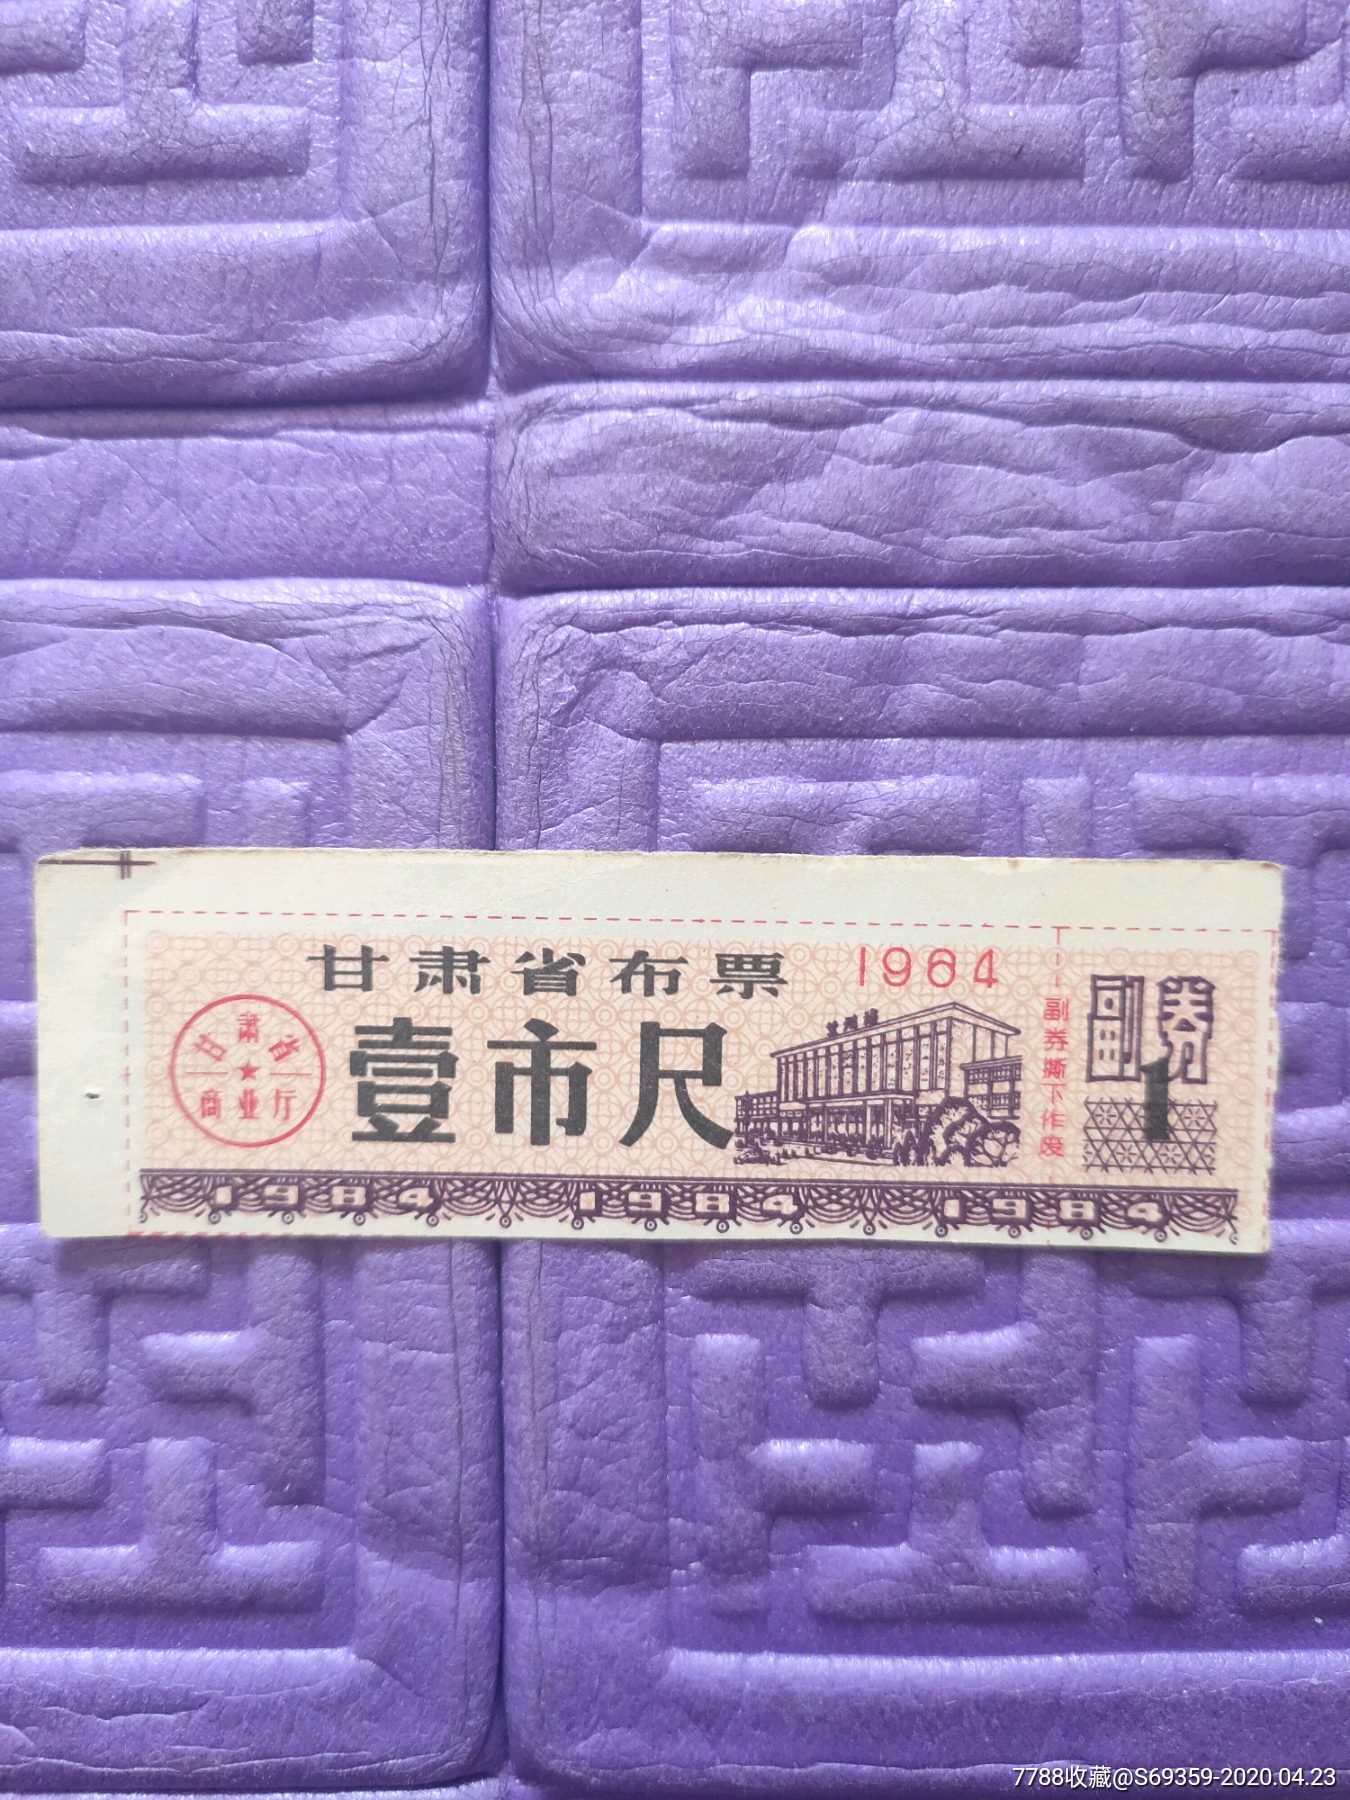 布票,甘肃省布票,1尺,1984年